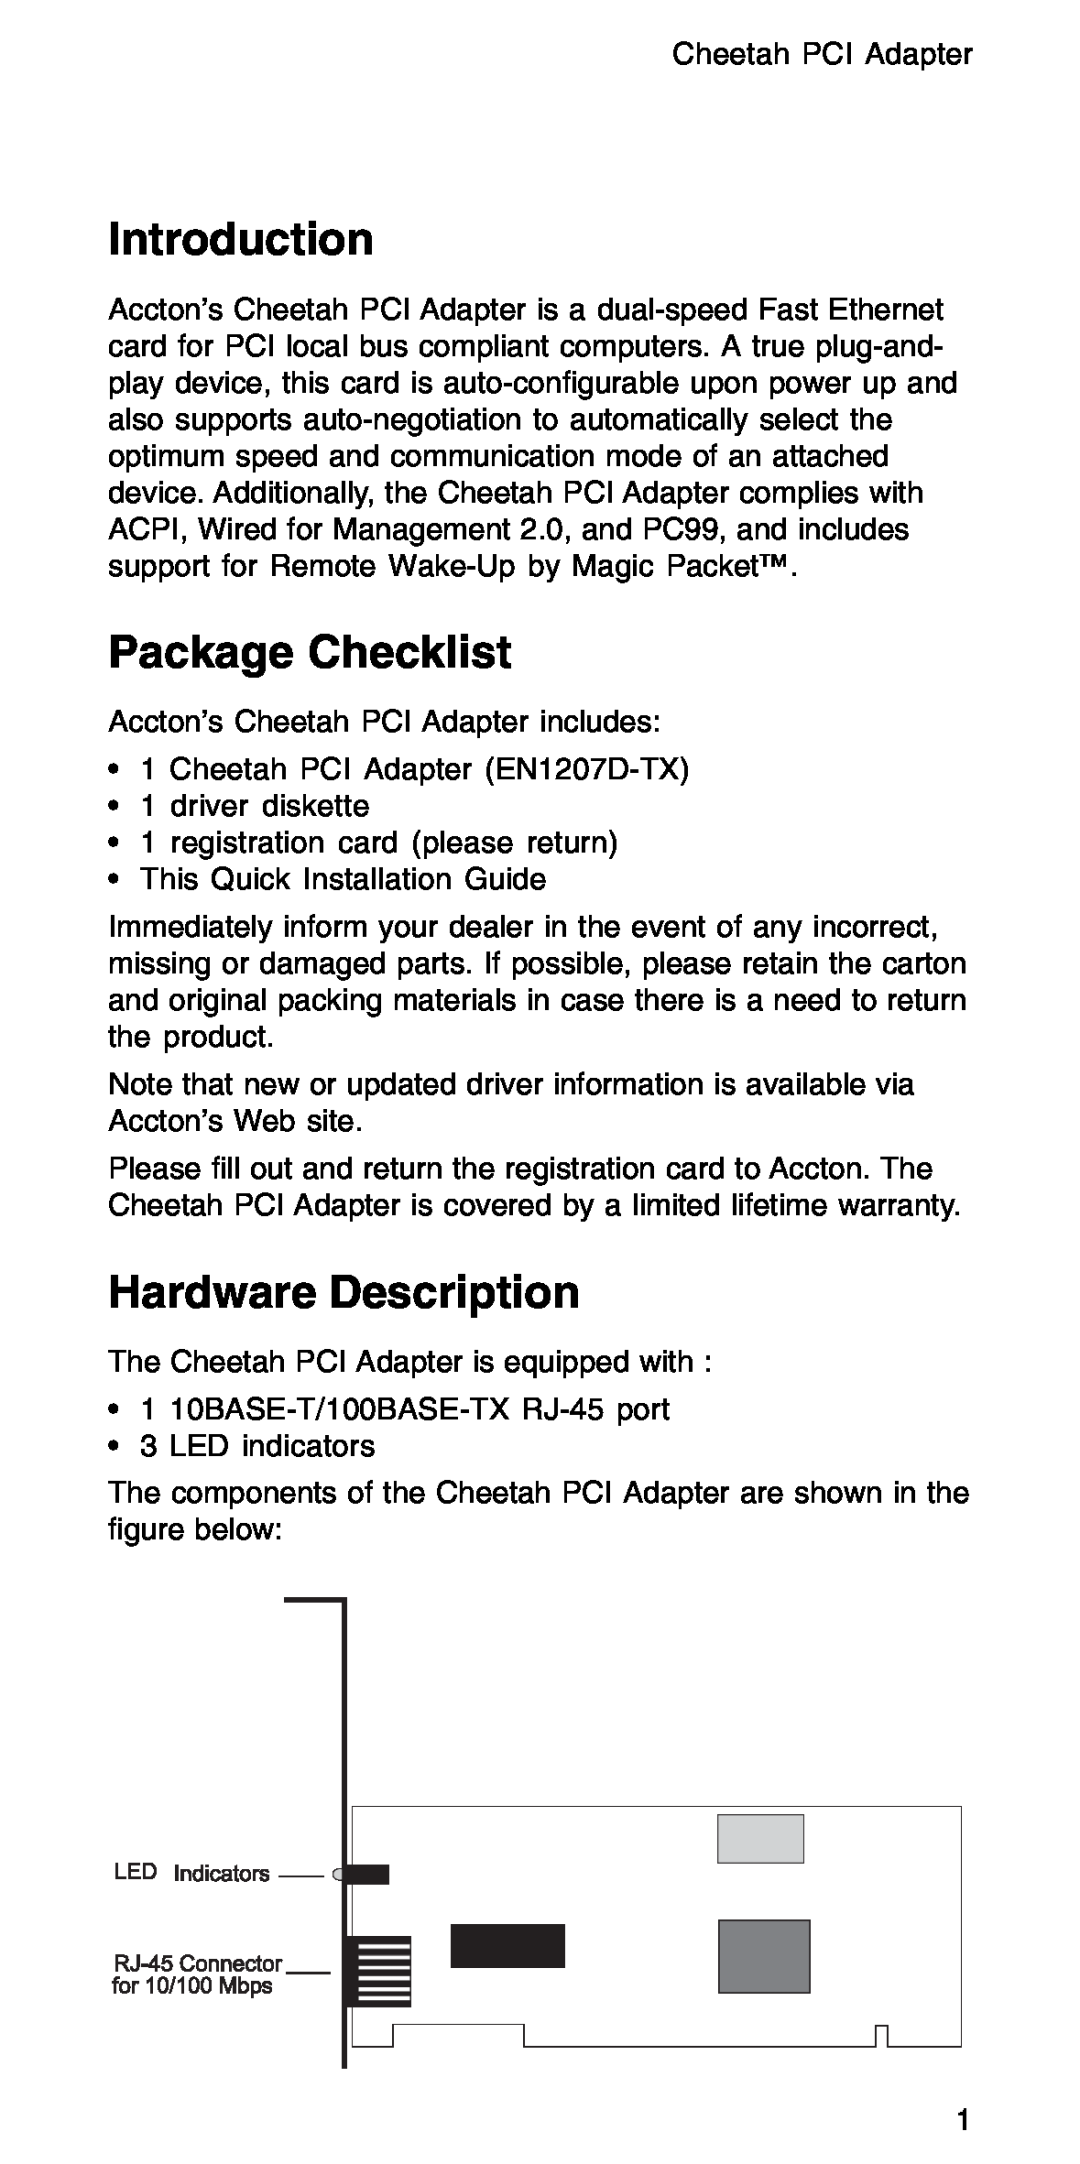 Accton Technology EN1207D-TX manual Introduction, Package Checklist, Hardware Description 